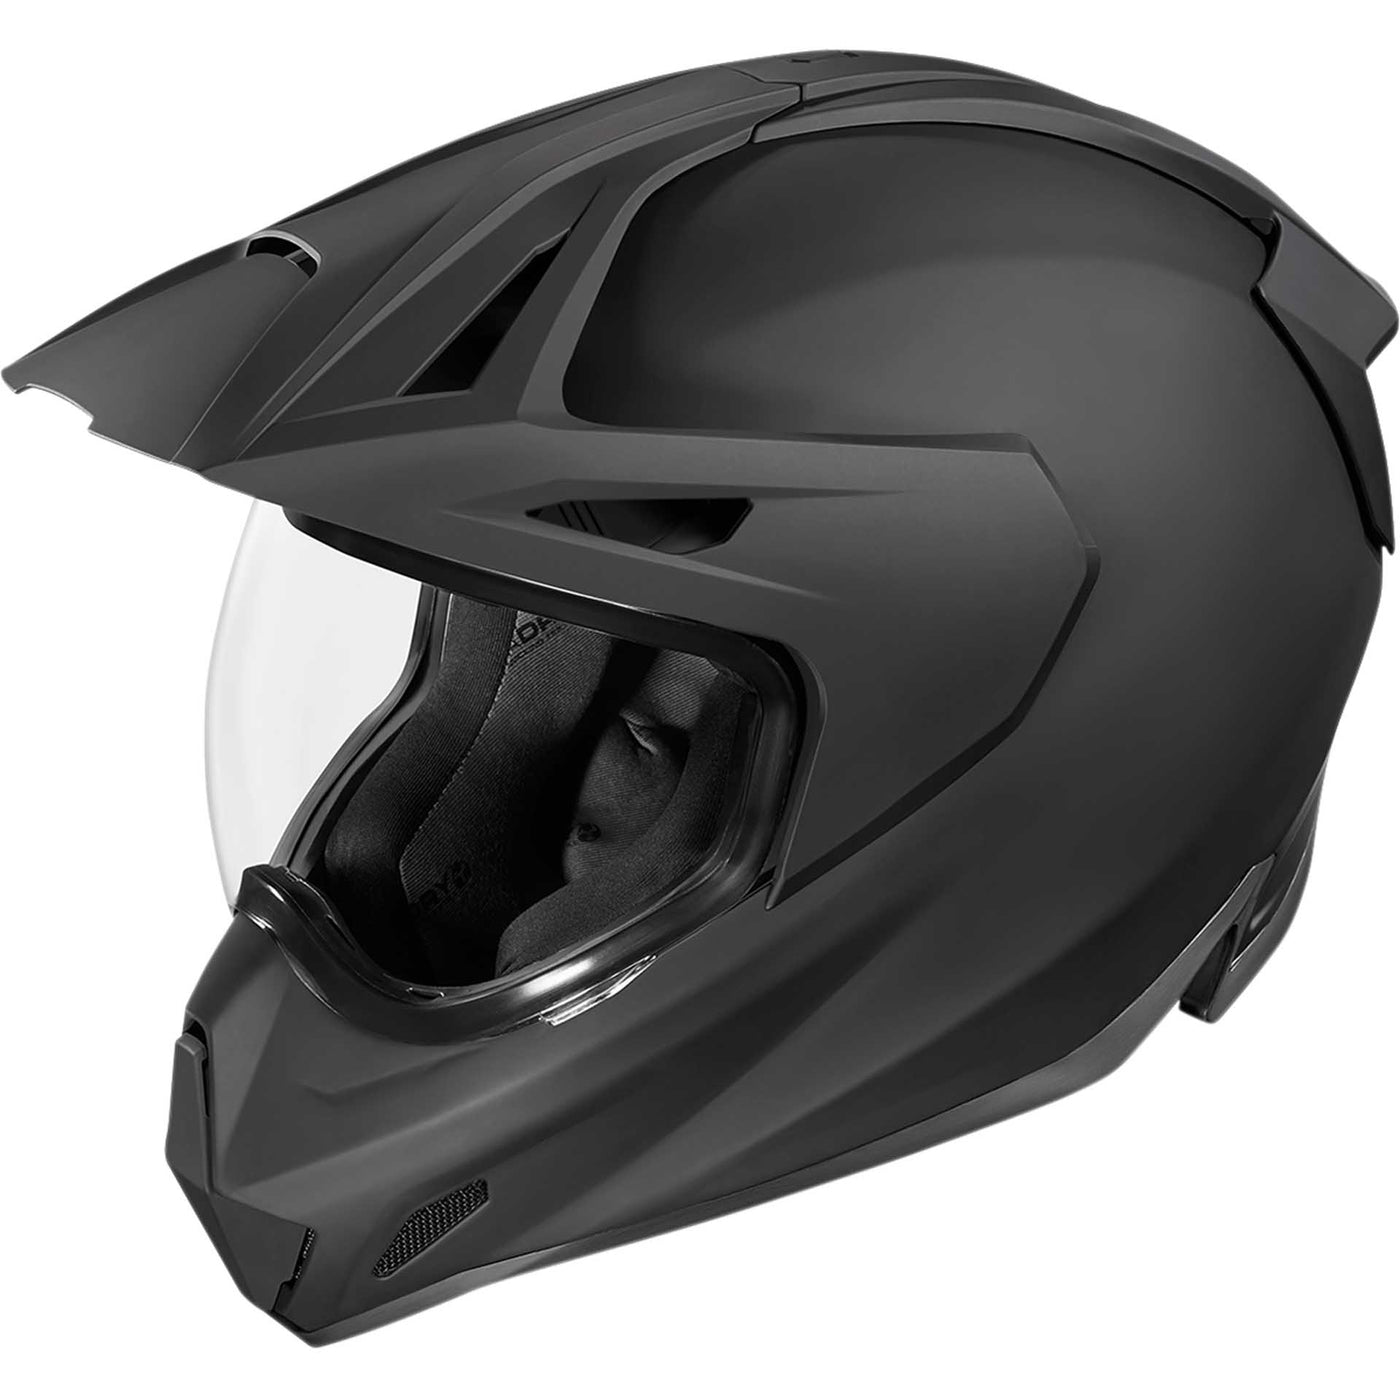 ICON Motorcycle Variant Pro Rubatone Helmet